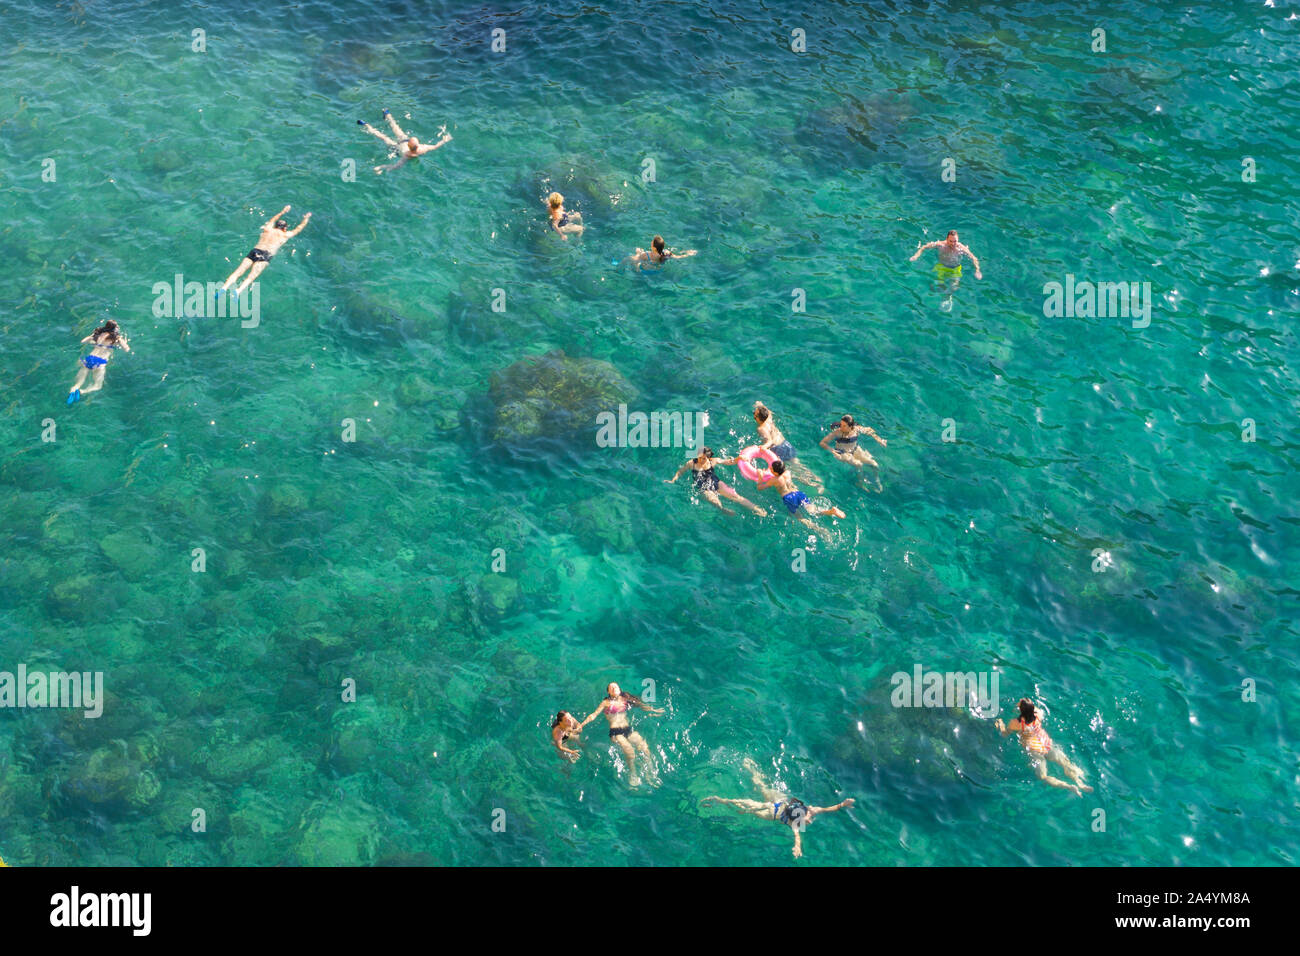 Italy, Apulia, Polignano a Mare, people swimming Stock Photo